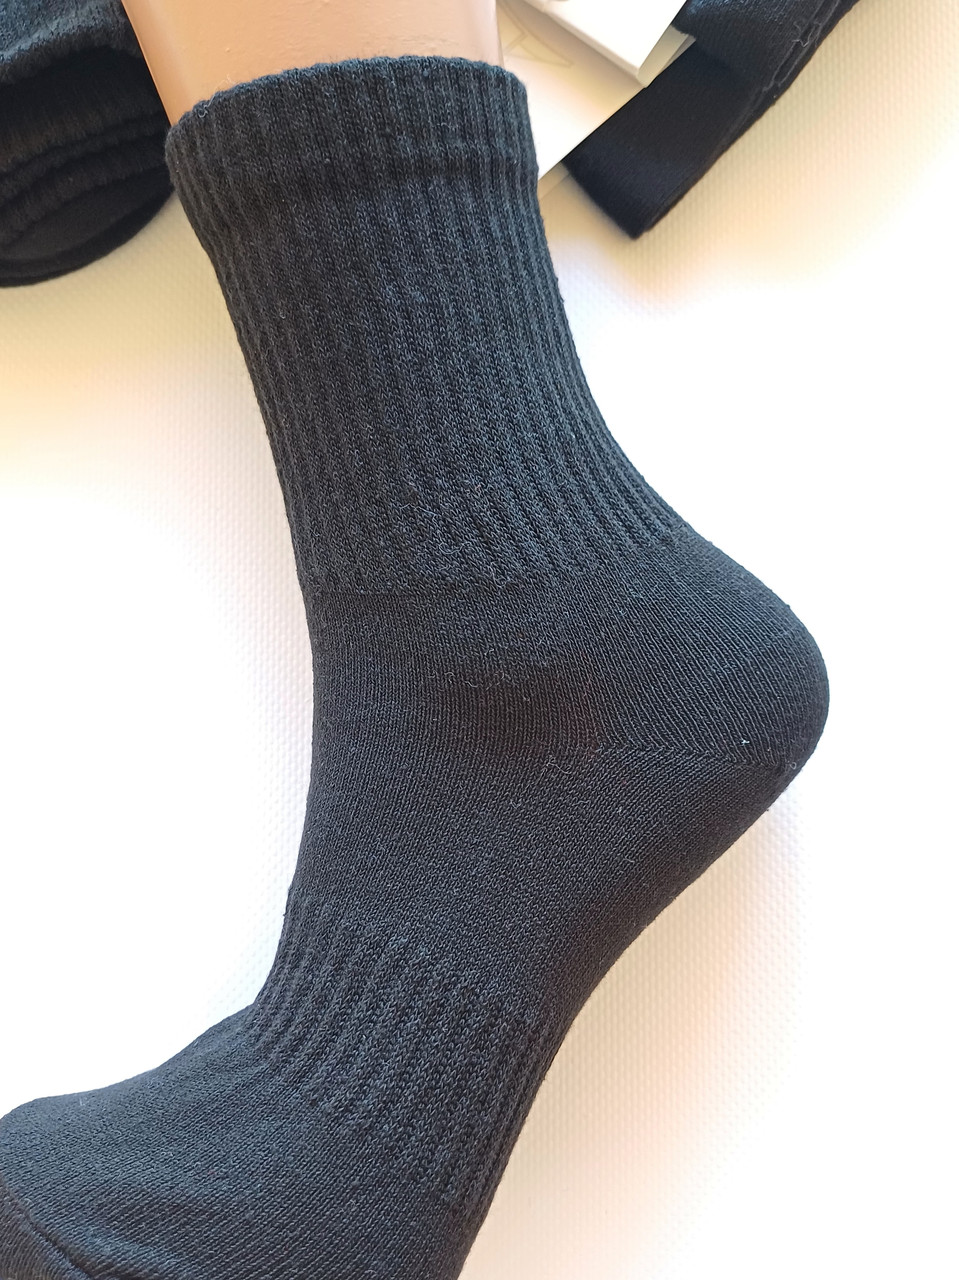 Шкарпетки дитячі чорні подовжена гумка ТМ Lomani  р. 20-22, 22-24